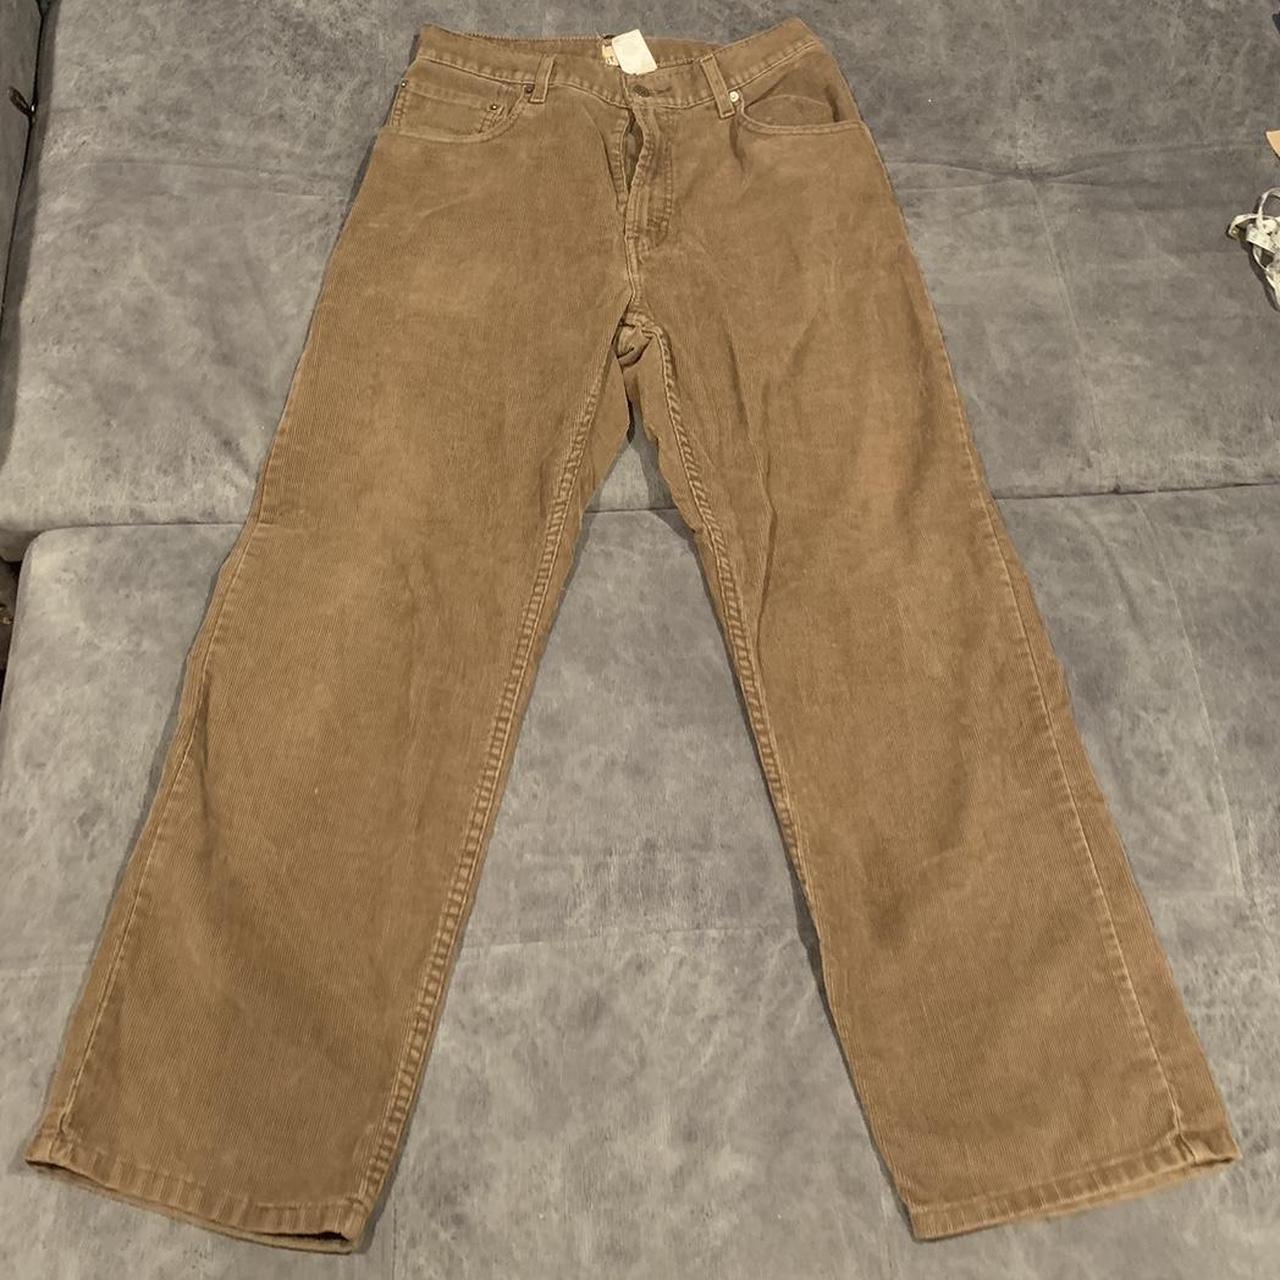 Levi’s jeans corduroy 34x30 dope pants #corduroy... - Depop